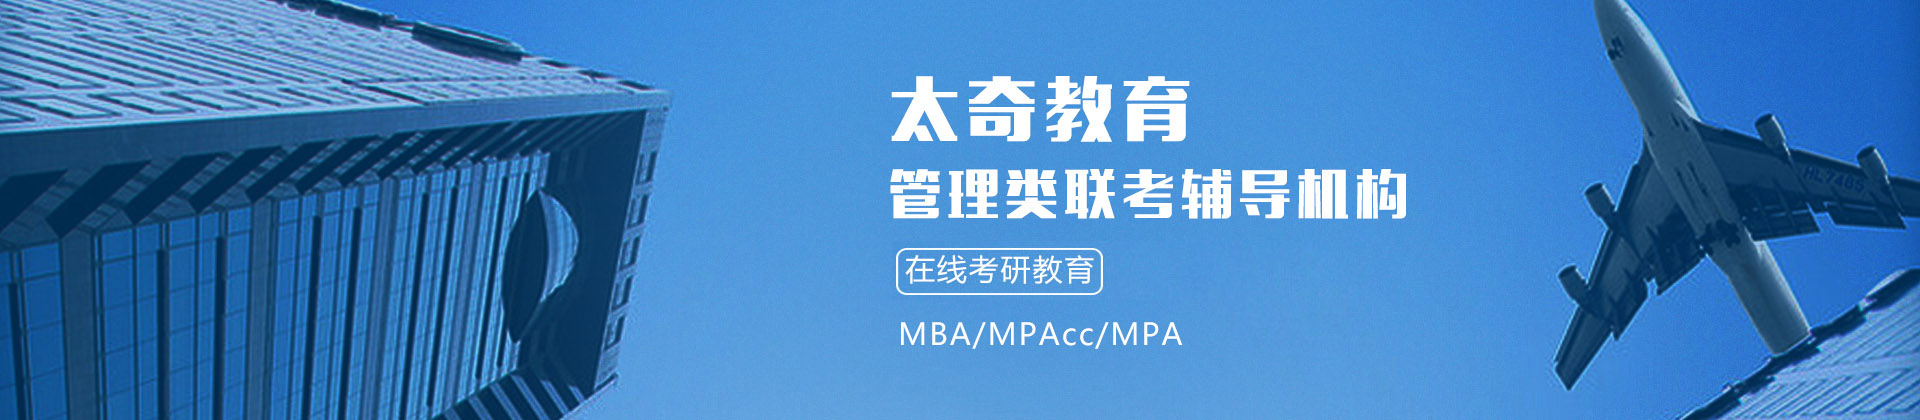 长沙太奇MBA